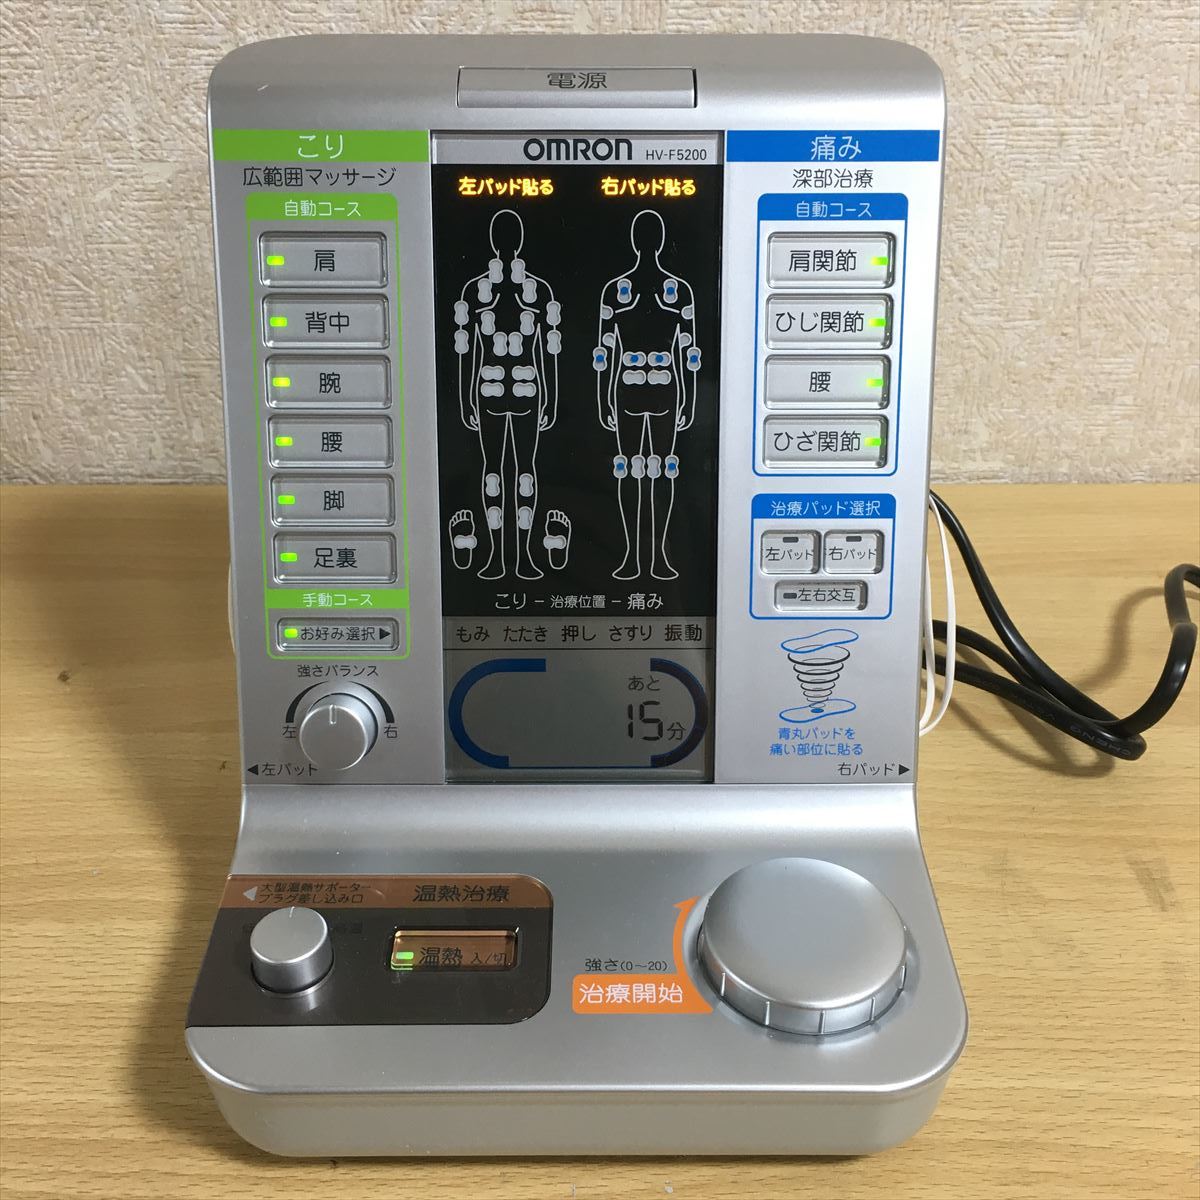 OMRON オムロン HV-F5200 電気治療器 電気治療 温熱治療 温熱療法 低周波 肩こり 家庭用医療機器 ヘルスケア 健康 通電確認済み 1 ス 4923_画像2